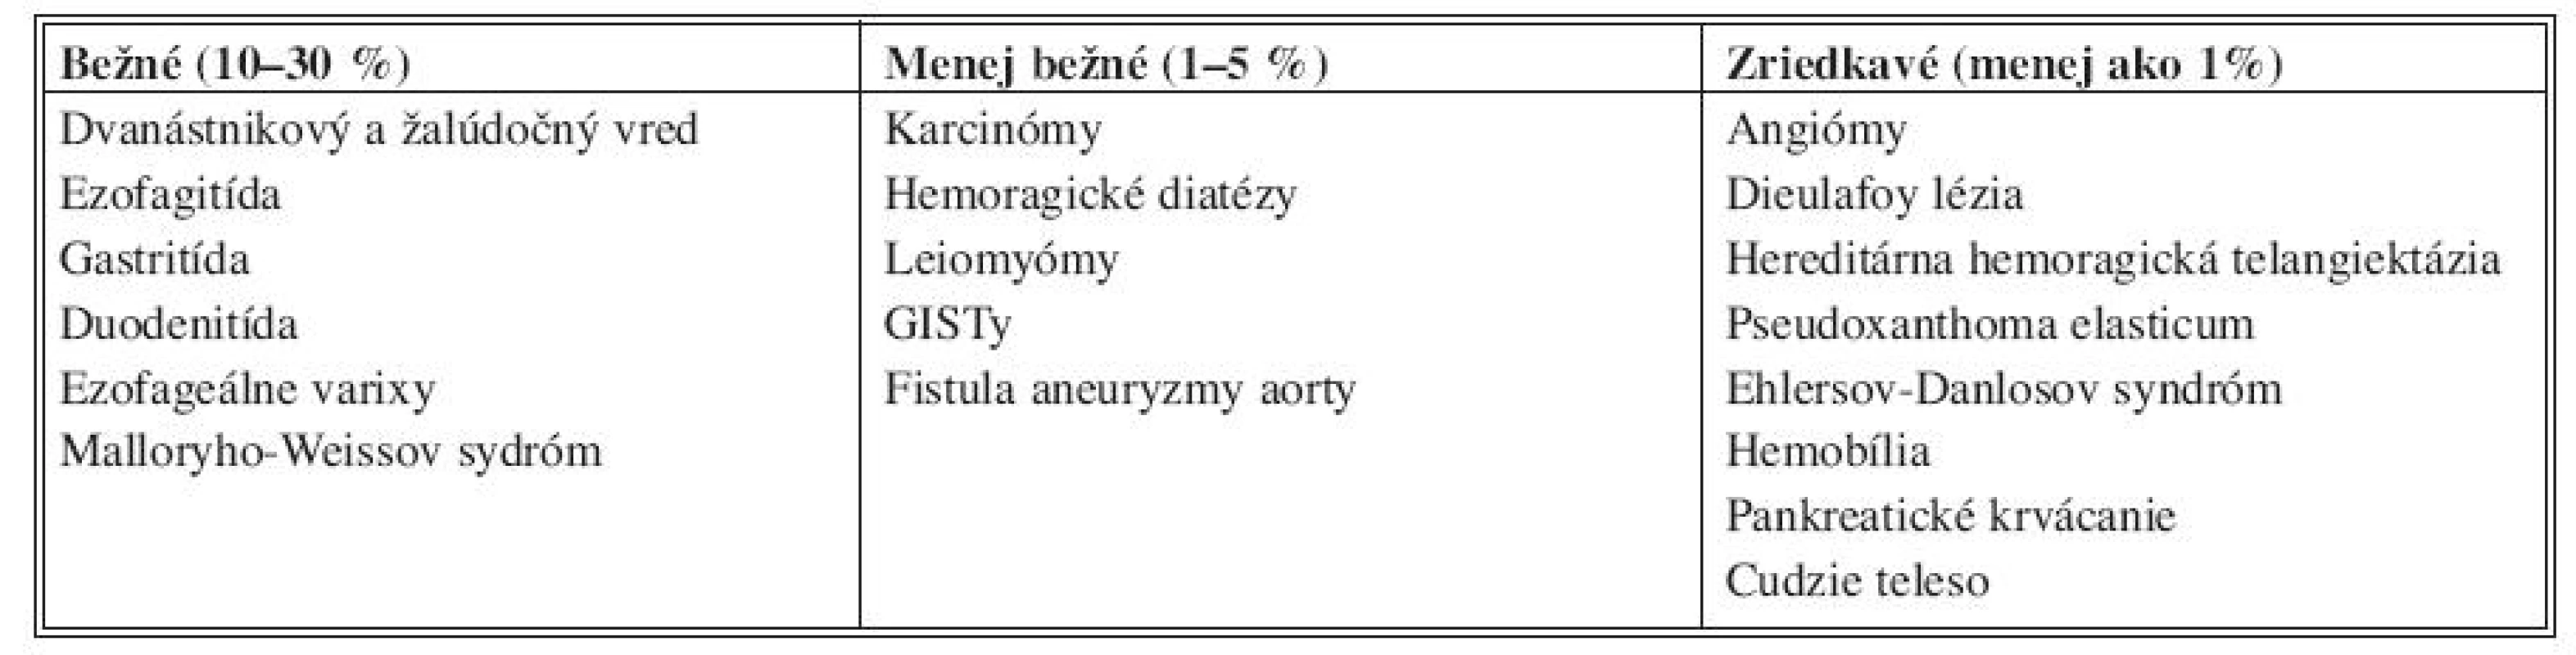 Zdroje krvácania z horného tráviaceho traktu [7]
Tab. 1. Sources of bleeding in the upper gastrointestinal tract